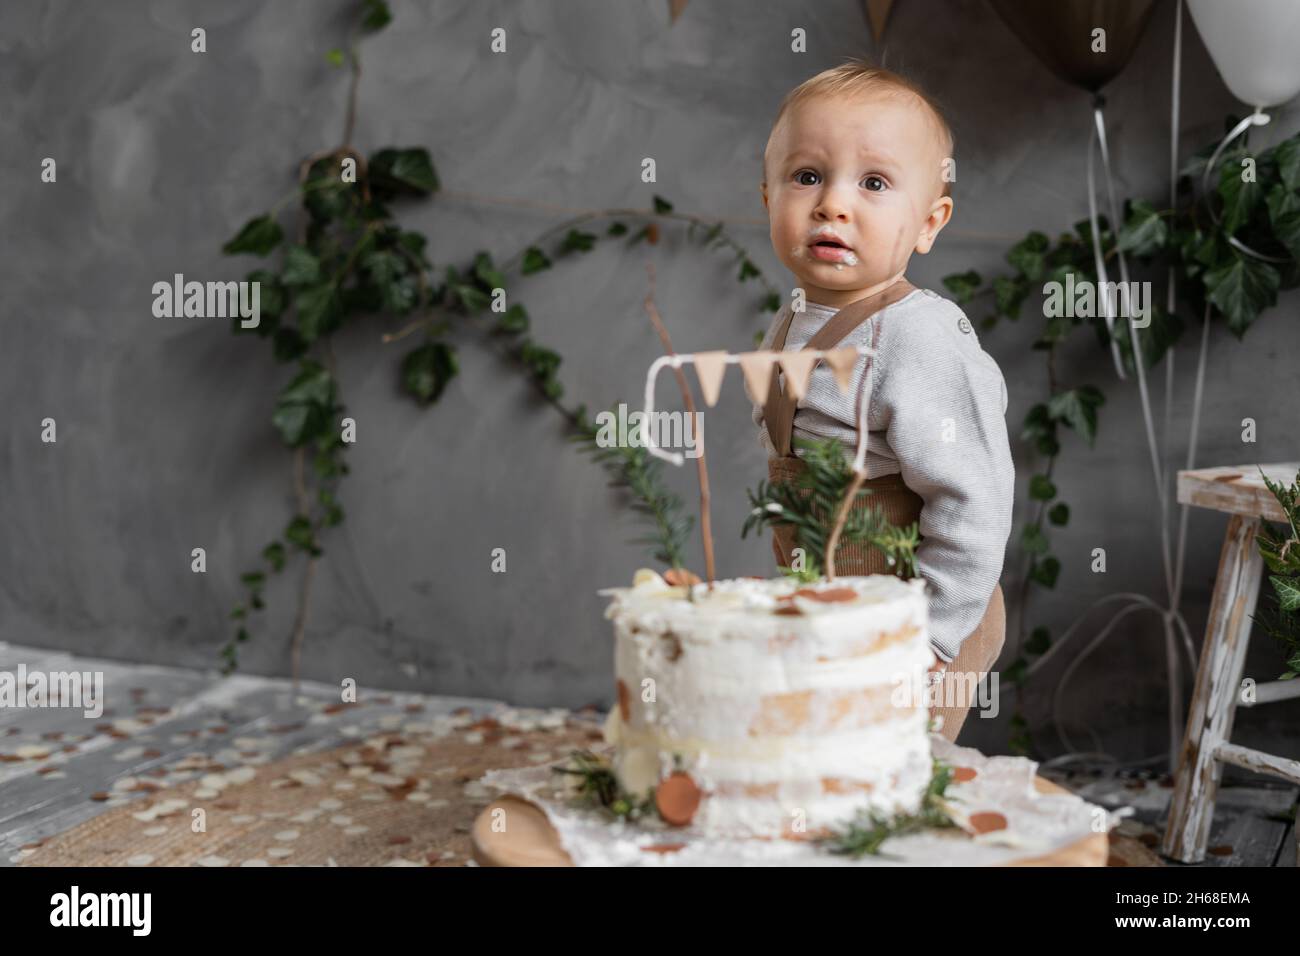 Portrait d'un petit garçon à son premier anniversaire, gâteau sur la table près de l'enfant, fond gris, endroit pour le texte, couleurs naturelles de la décoration.Un an Banque D'Images